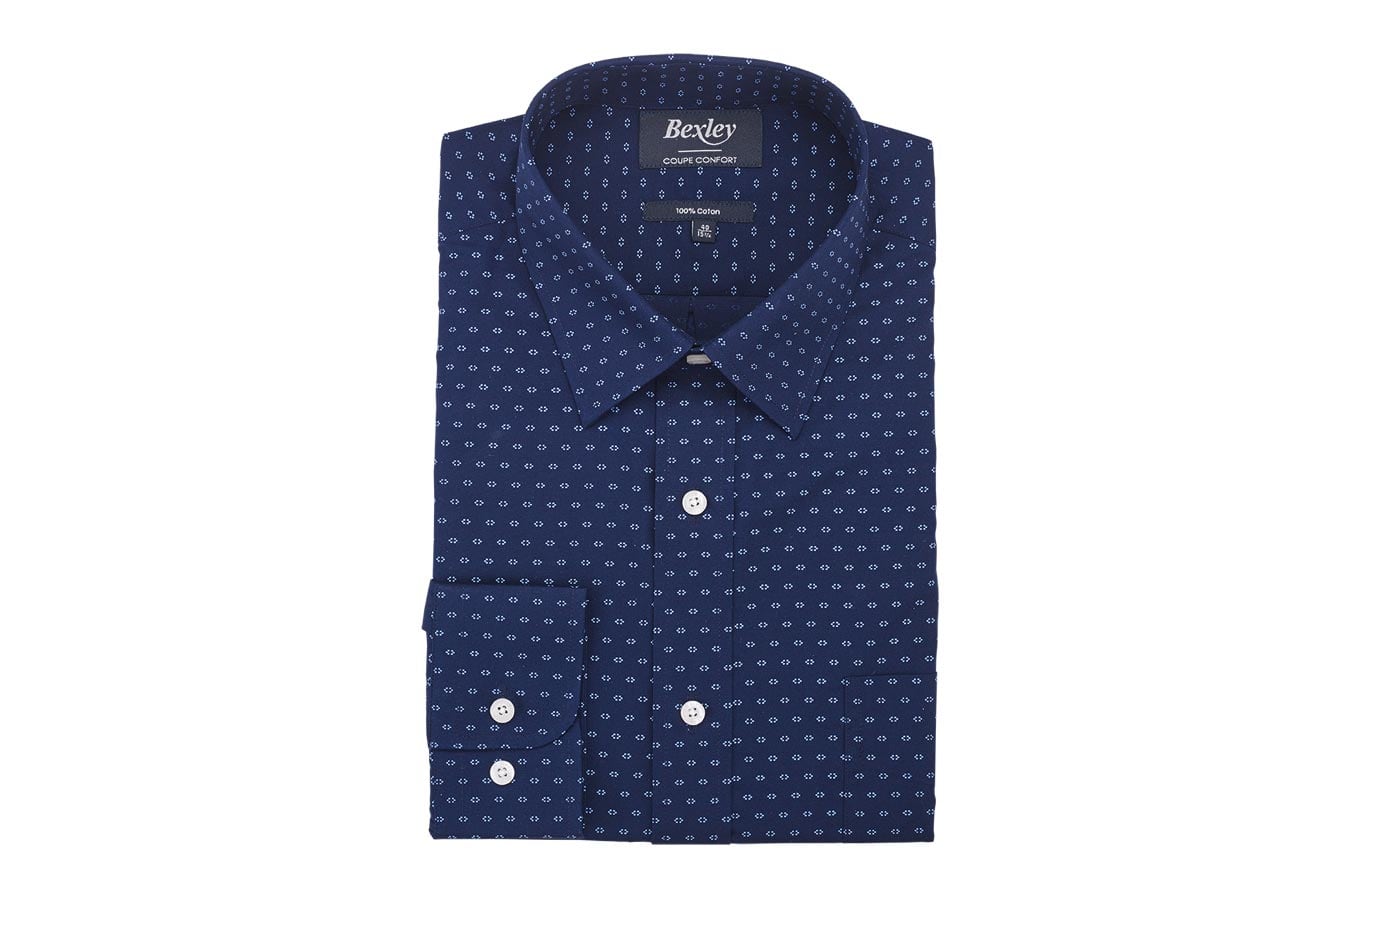 bexley chemise homme 100% coton, navy et bleu, manches longues, coupe confort